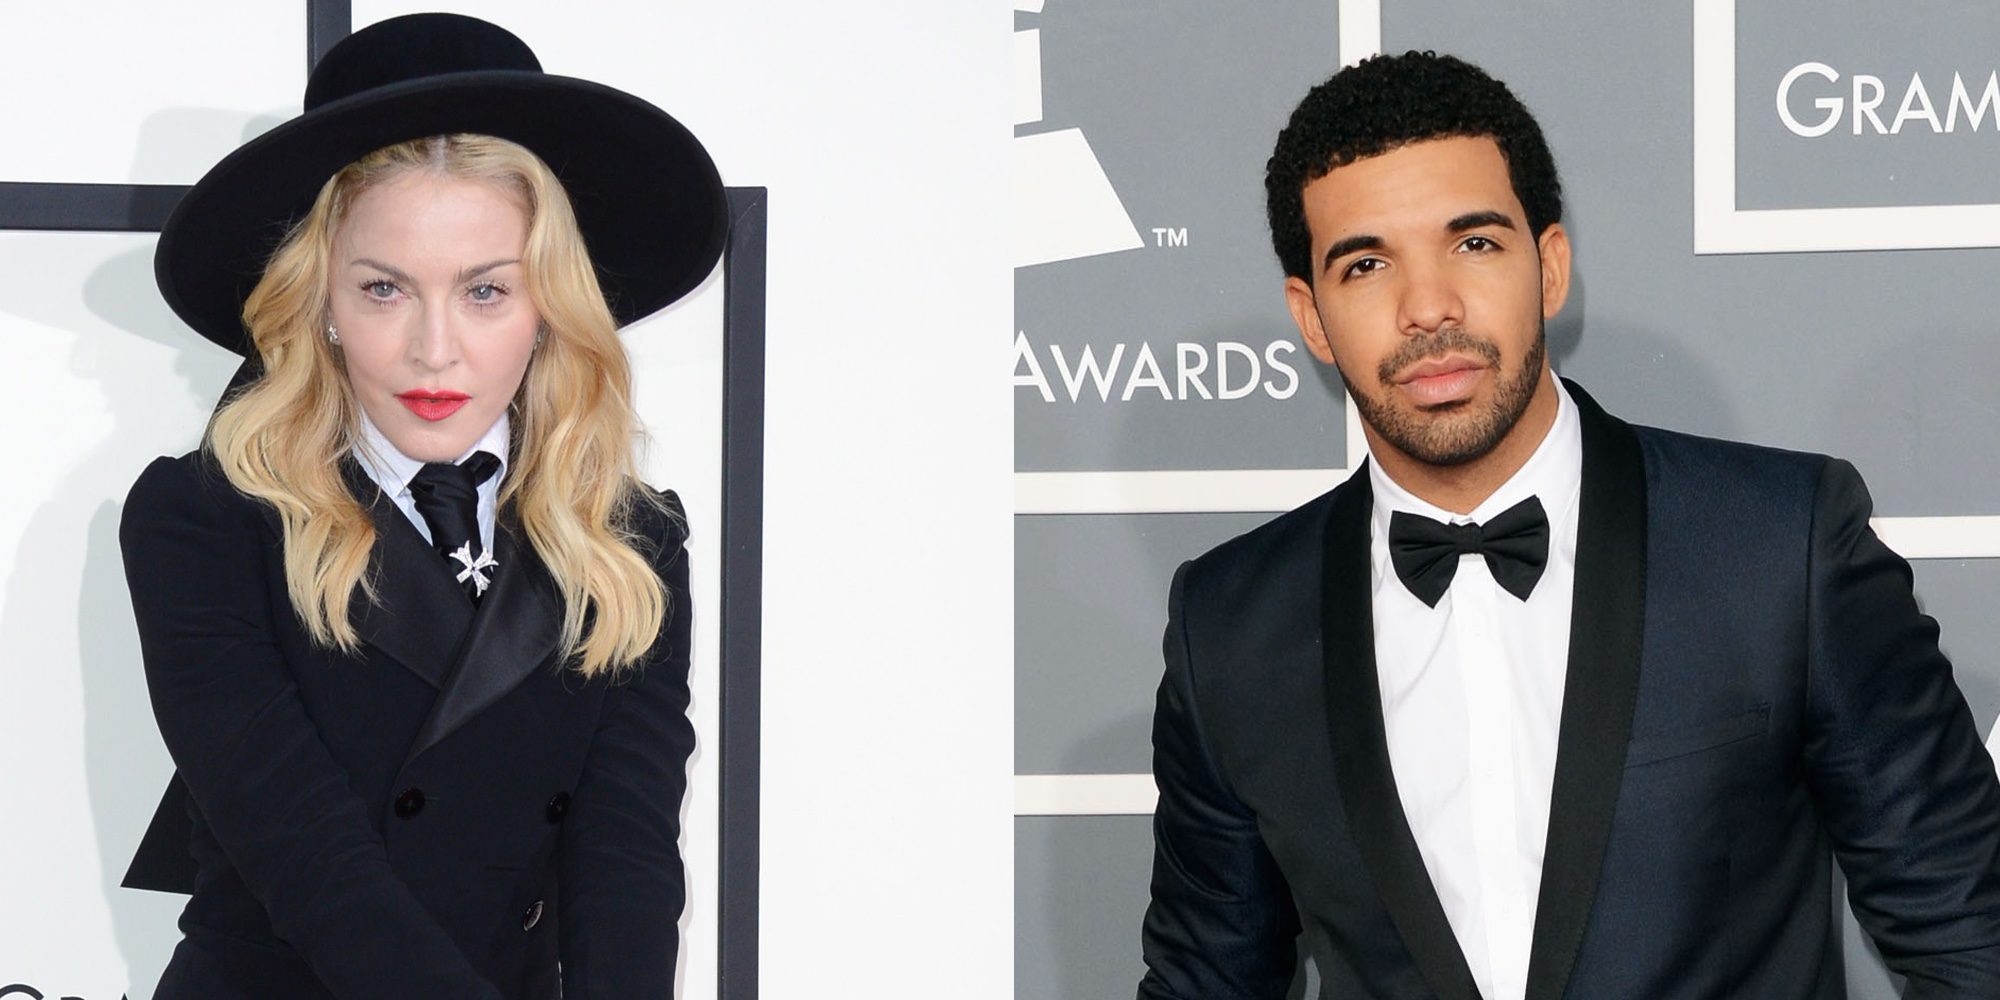 Madonna y Drake tuvieron una relación antes de su famoso beso en Coachella 2015